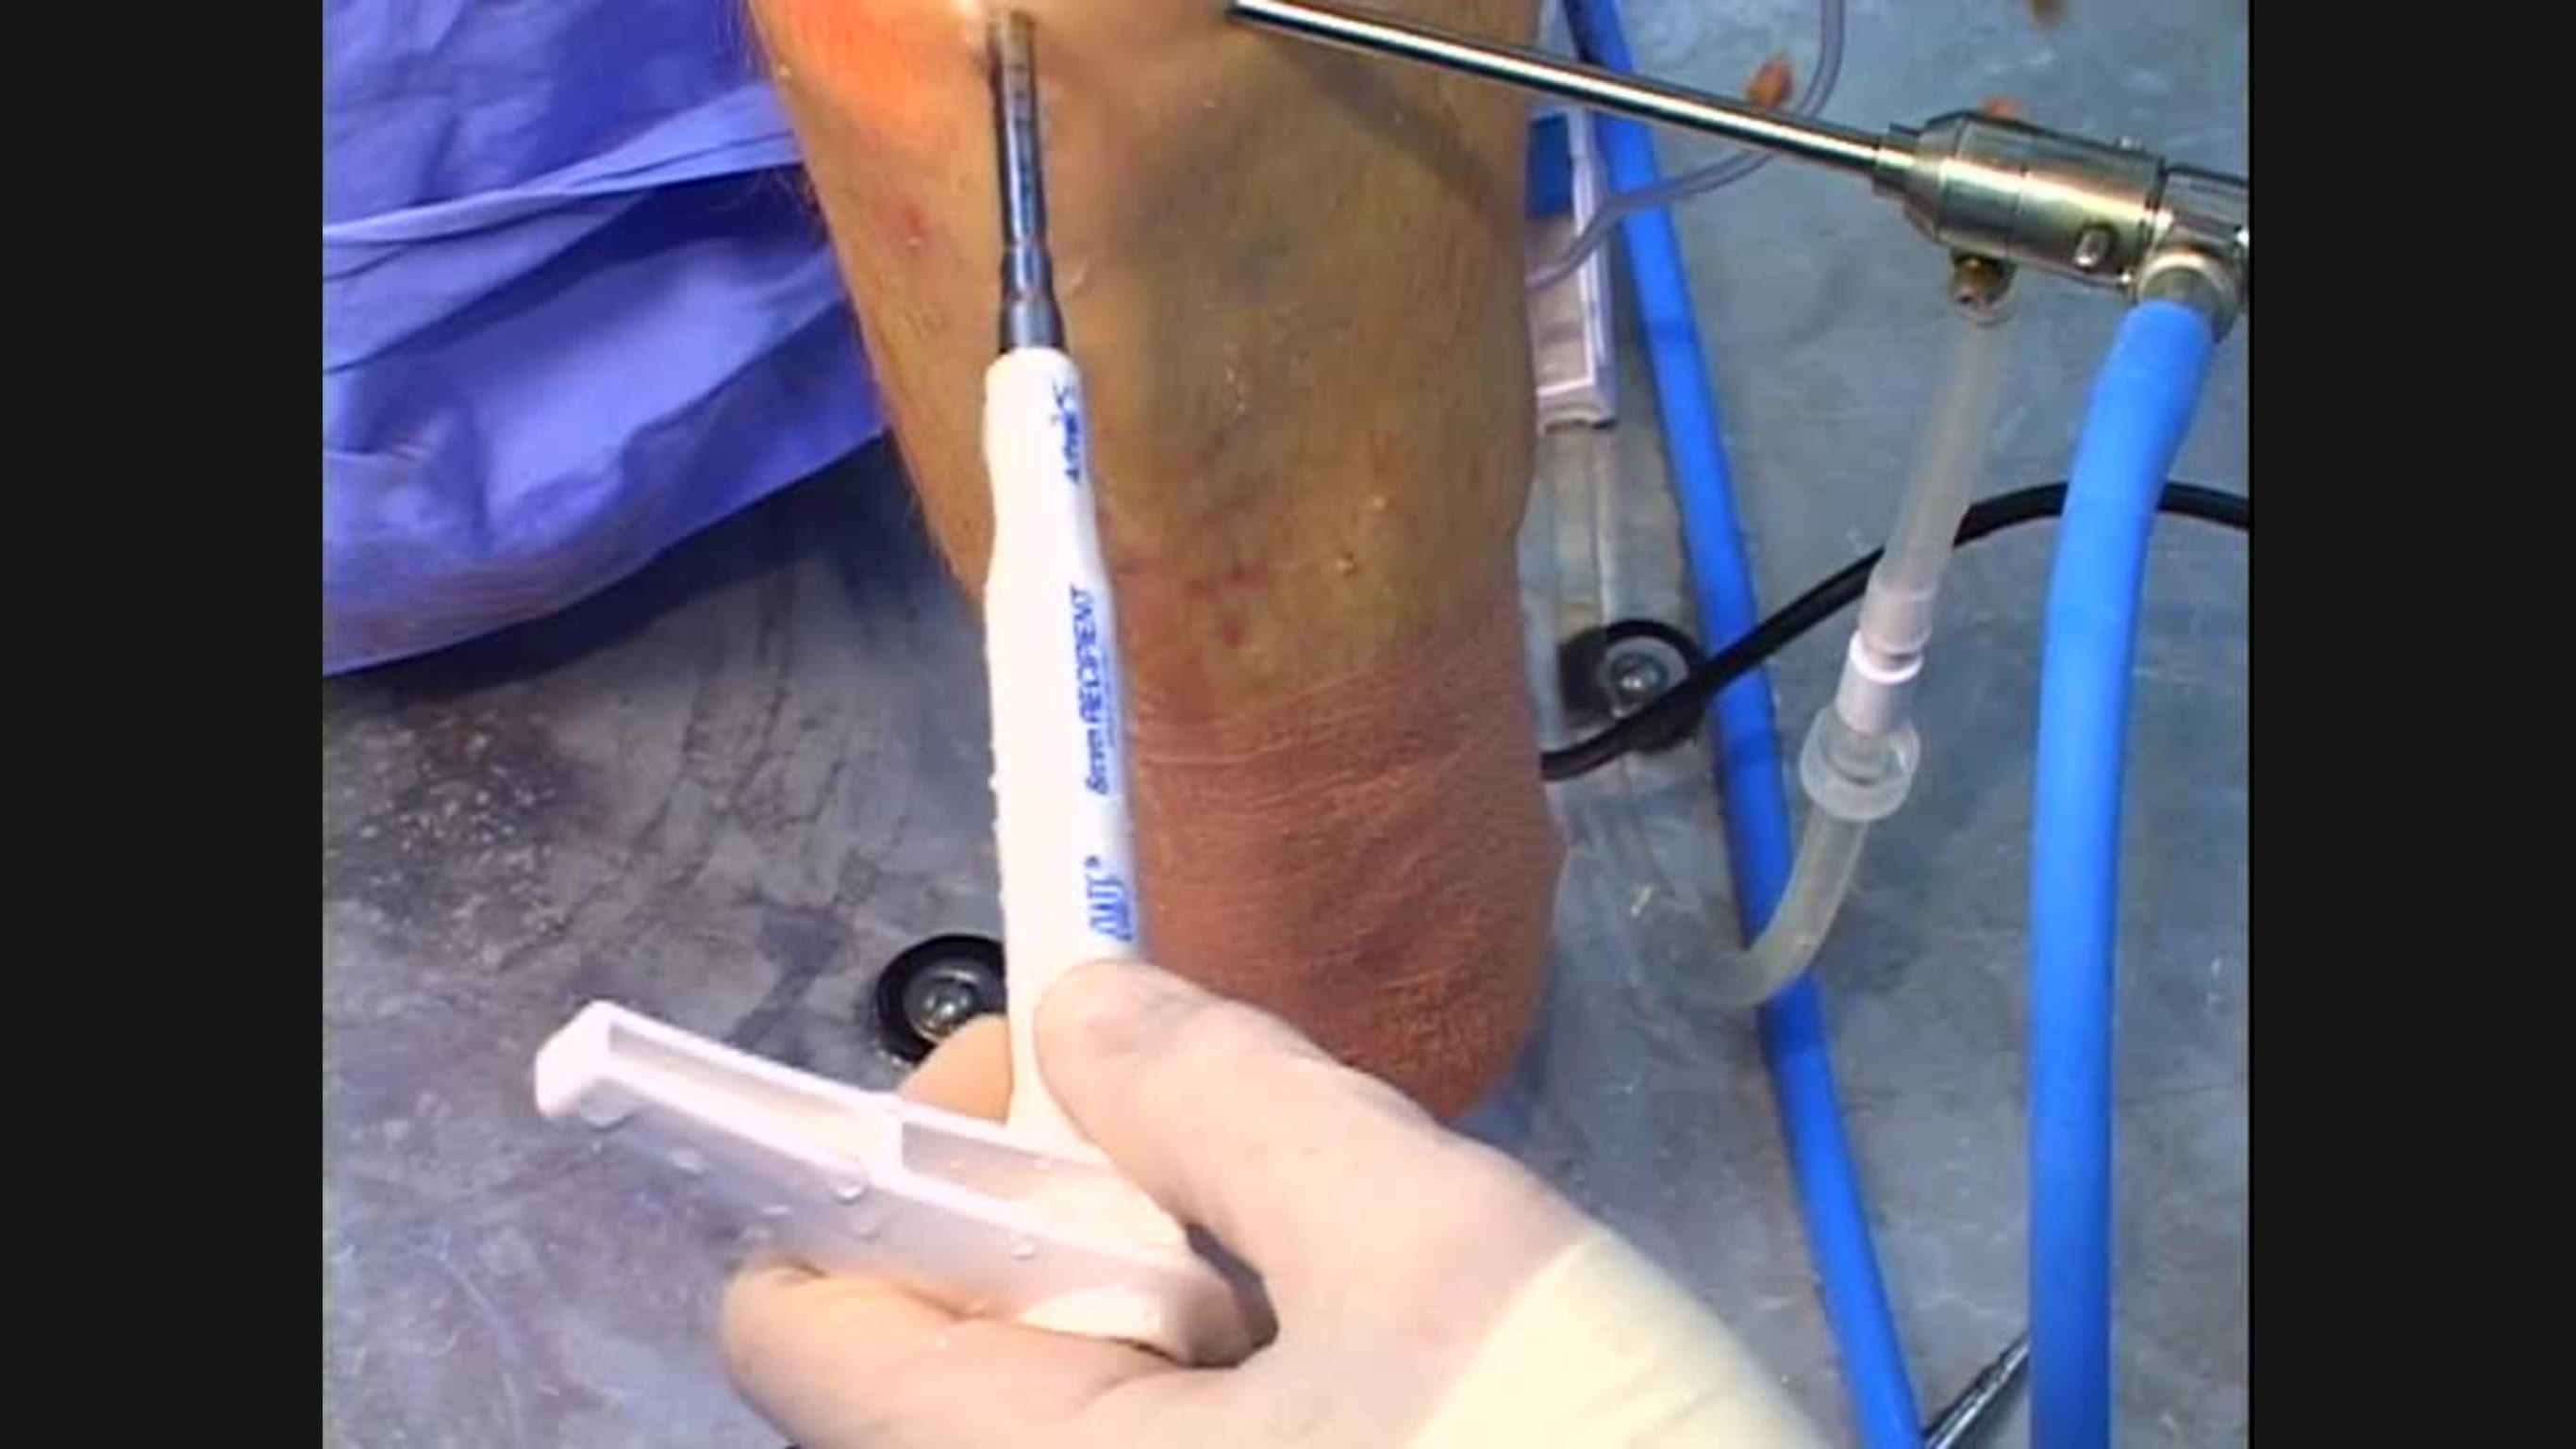 Cadaveric Demonstration of the Single Use Osteochondral Autograft Transfer System